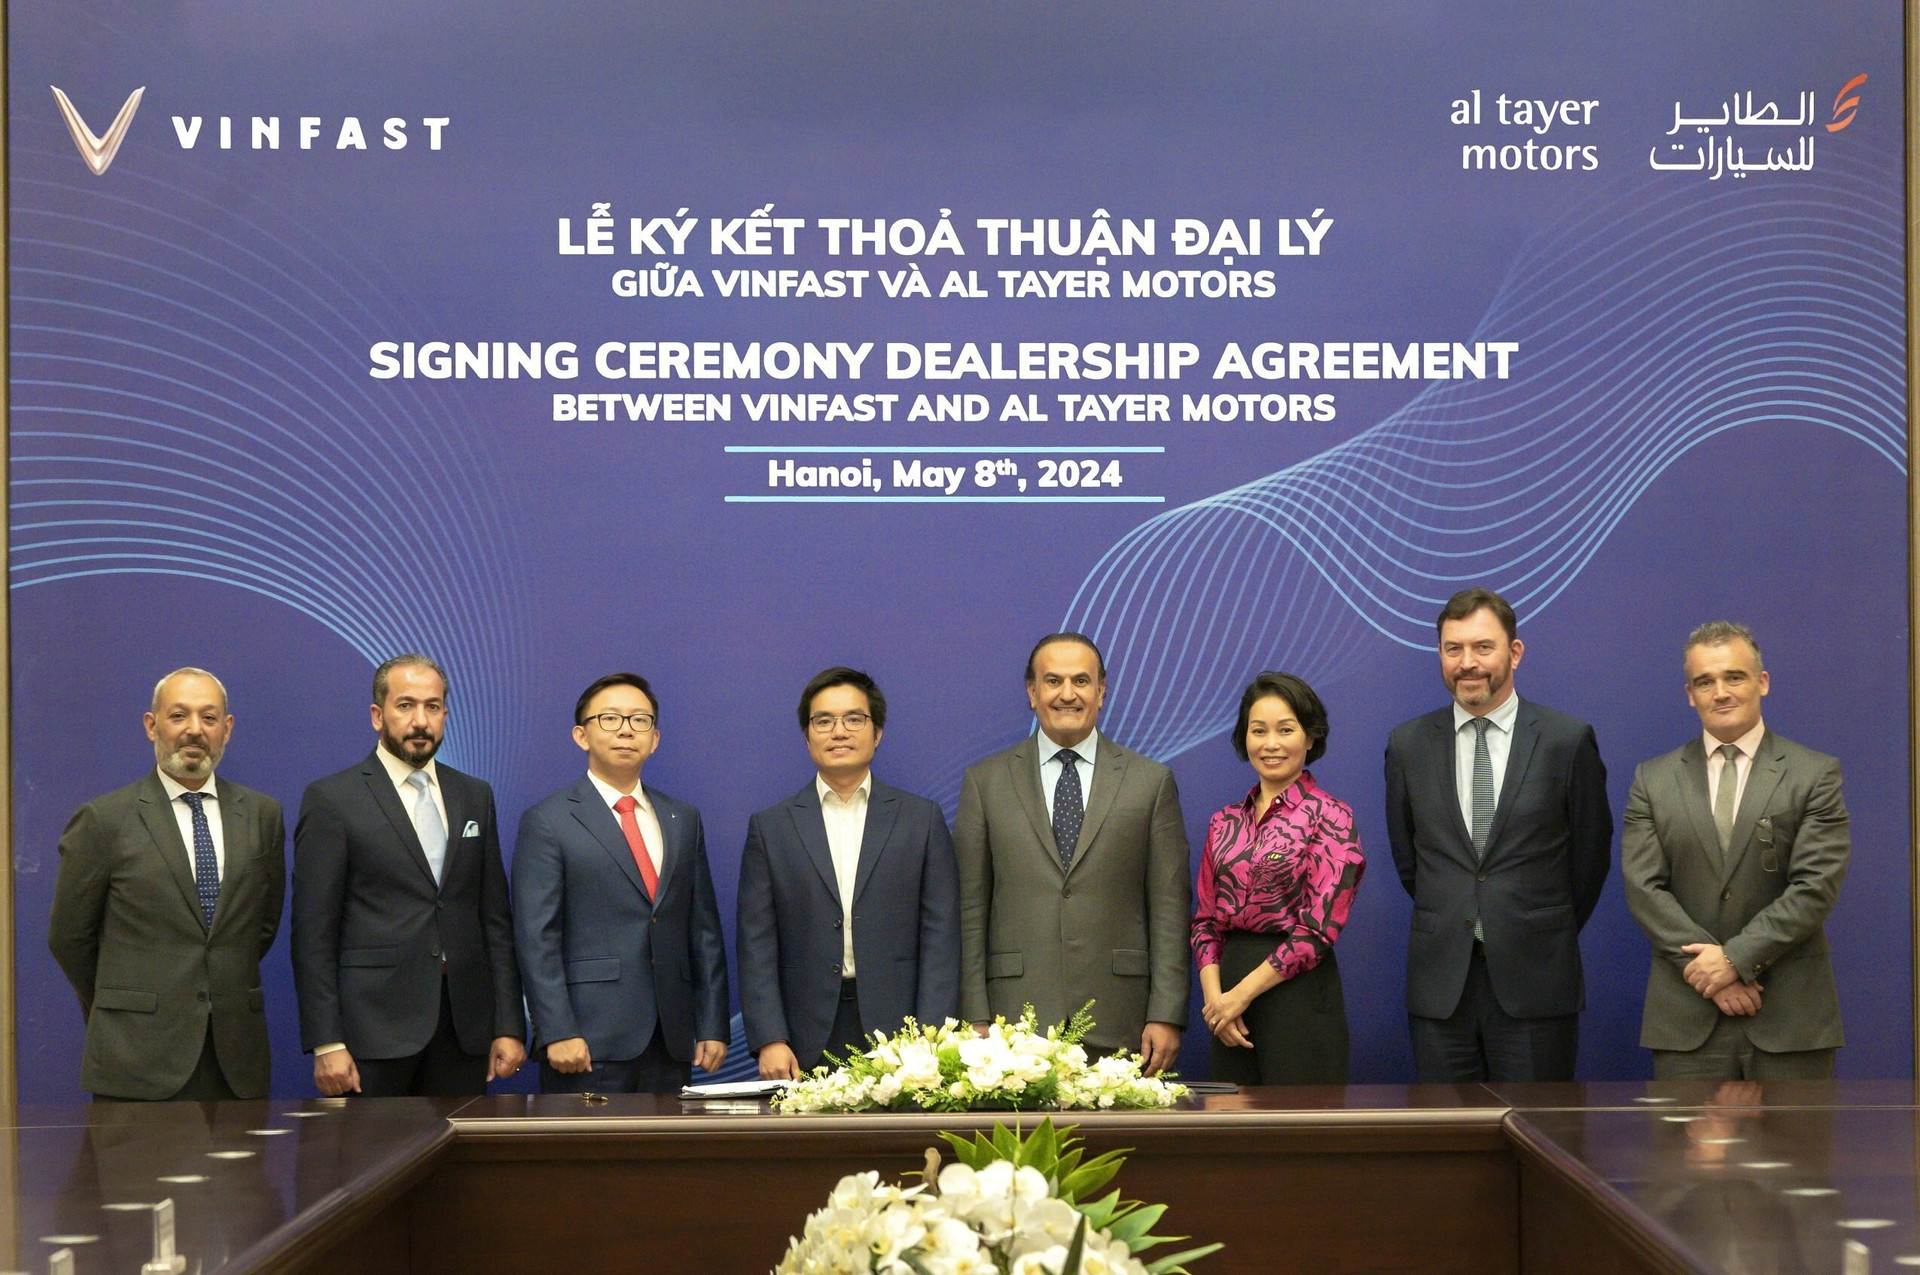 Ông Tạ Xuân Hiển, Tổng Giám đốc VinFast Trung Đông (Đứng thứ 4 từ bên trái), và ông Saeed Al Tayer, Tổng Giám đốc Al Tayer Motors (Đứng thứ 4 từ bên phải), cùng đại diện hai bên tại lễ ký kết.